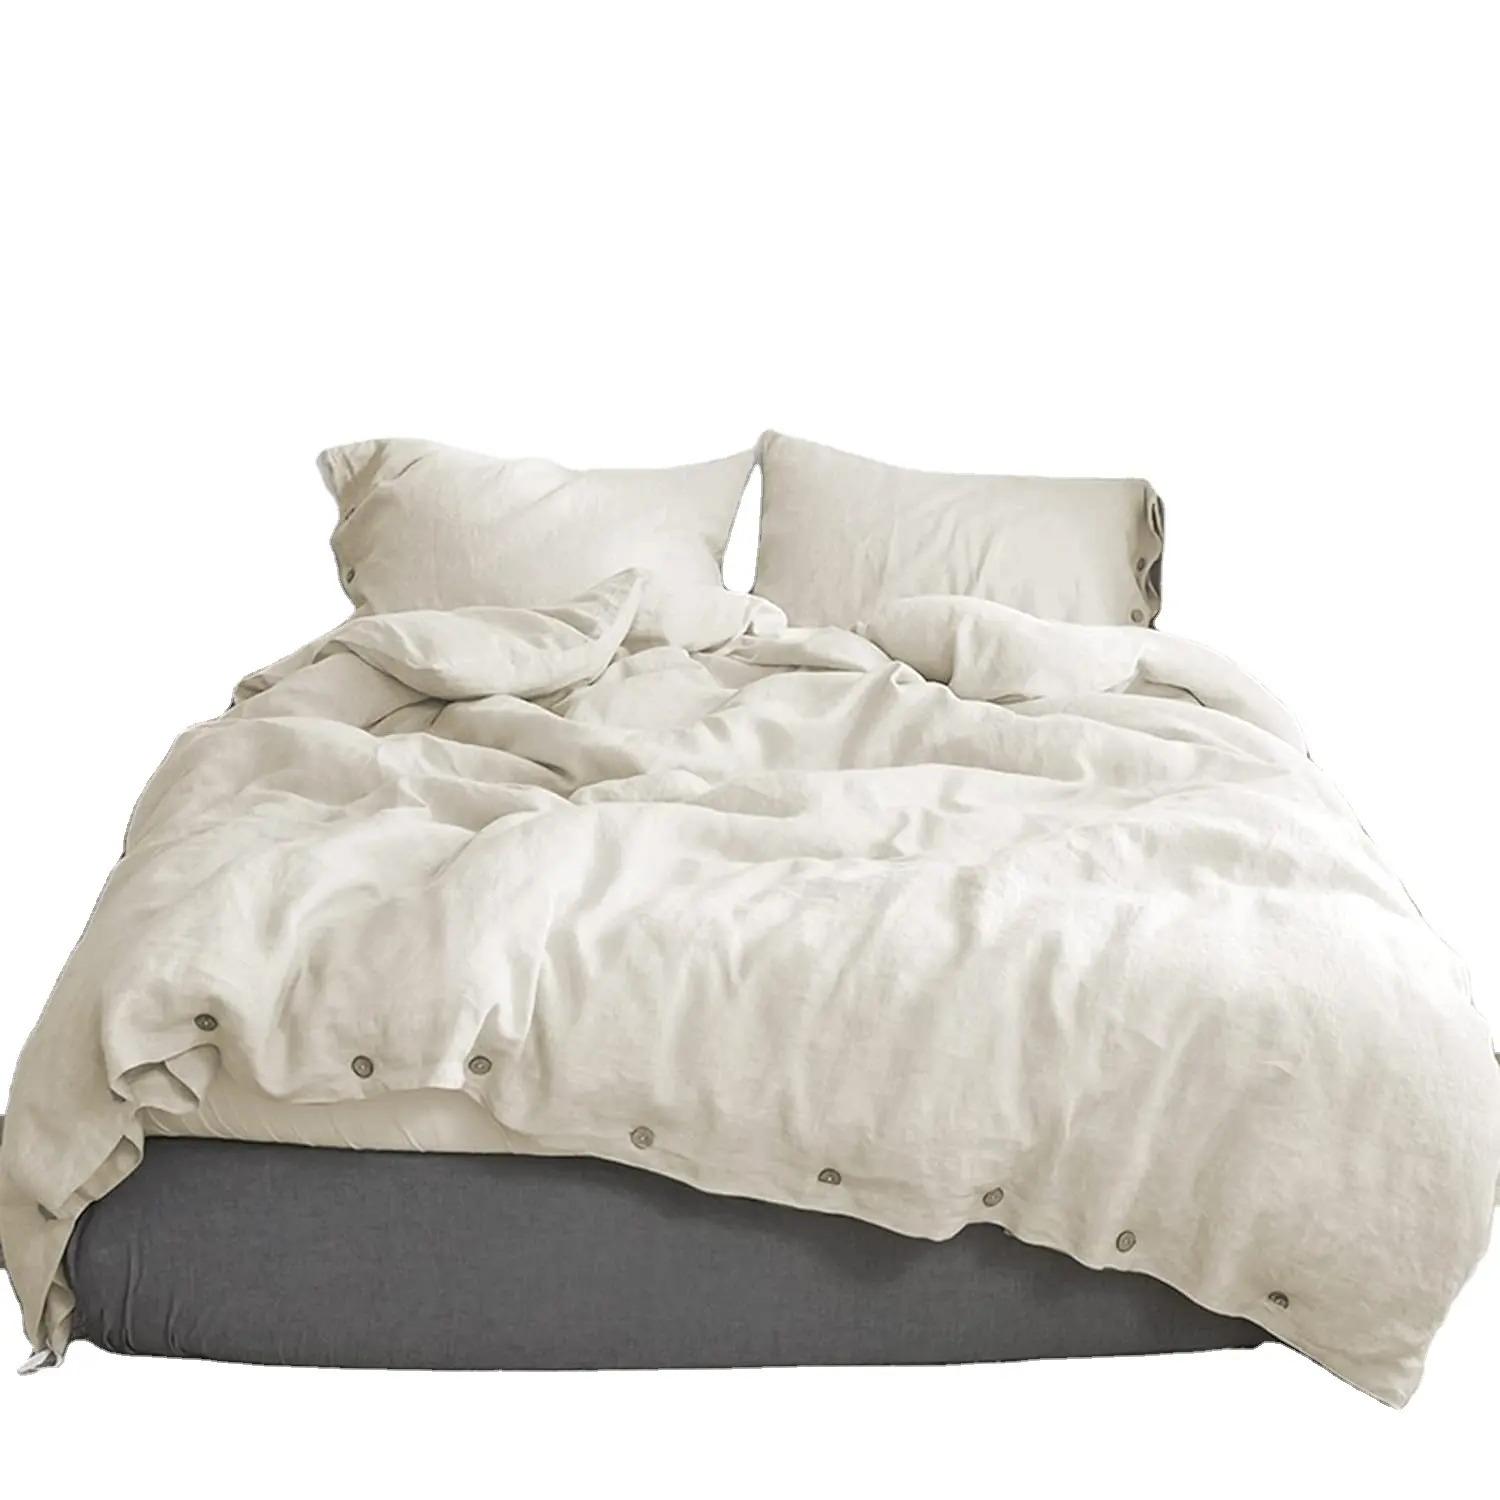 कस्टम शीट बिस्तर को कवर करता है, राजा आकार के डवेट बिस्तर को कवर करता है अच्छी सामग्री रमी लिनन बिस्तर